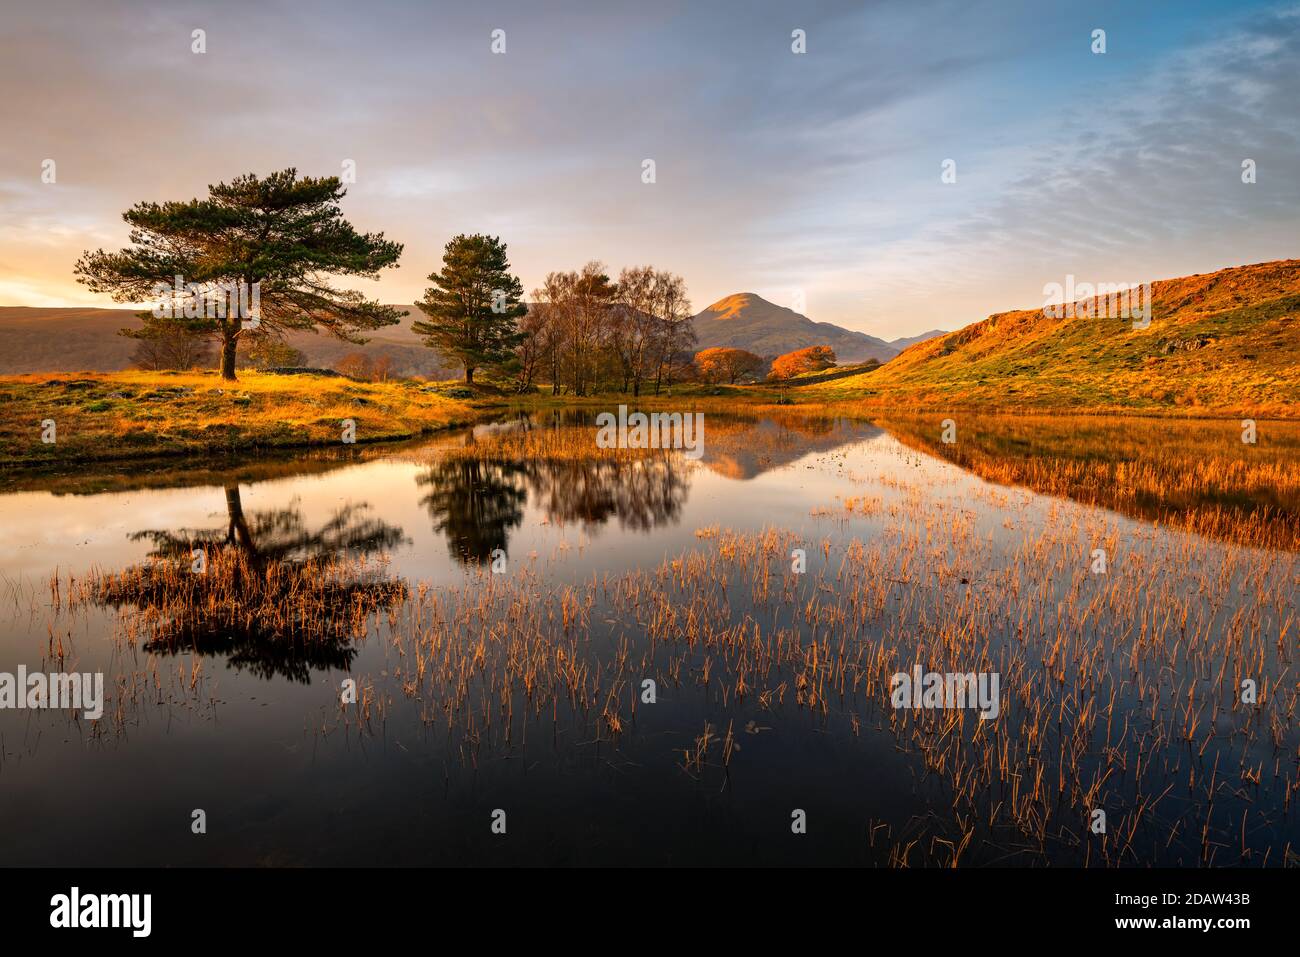 Reflet miroir parfait des arbres et de la montagne dans le petit lac/tarn près de Coniston dans le Lake District, Royaume-Uni. Banque D'Images